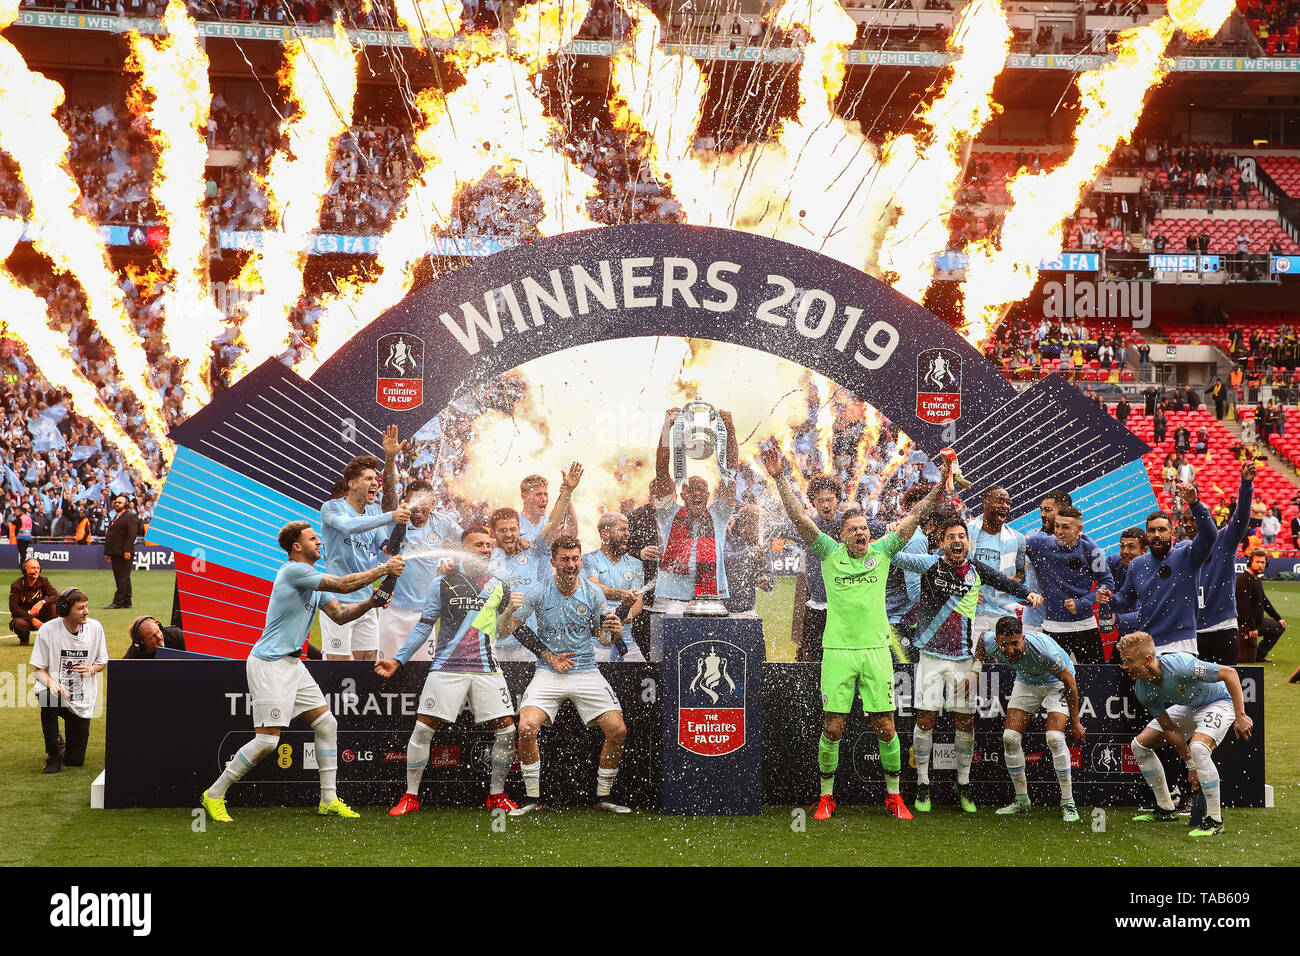 Vincent Kompany de Manchester City soulève le trophée FA Cup après son côté battre Watford 6-0 - Manchester City v Watford, l'Unis finale de la FA Cup, au stade de Wembley, Londres - 18 mai 2019 Editorial Utilisez uniquement Banque D'Images